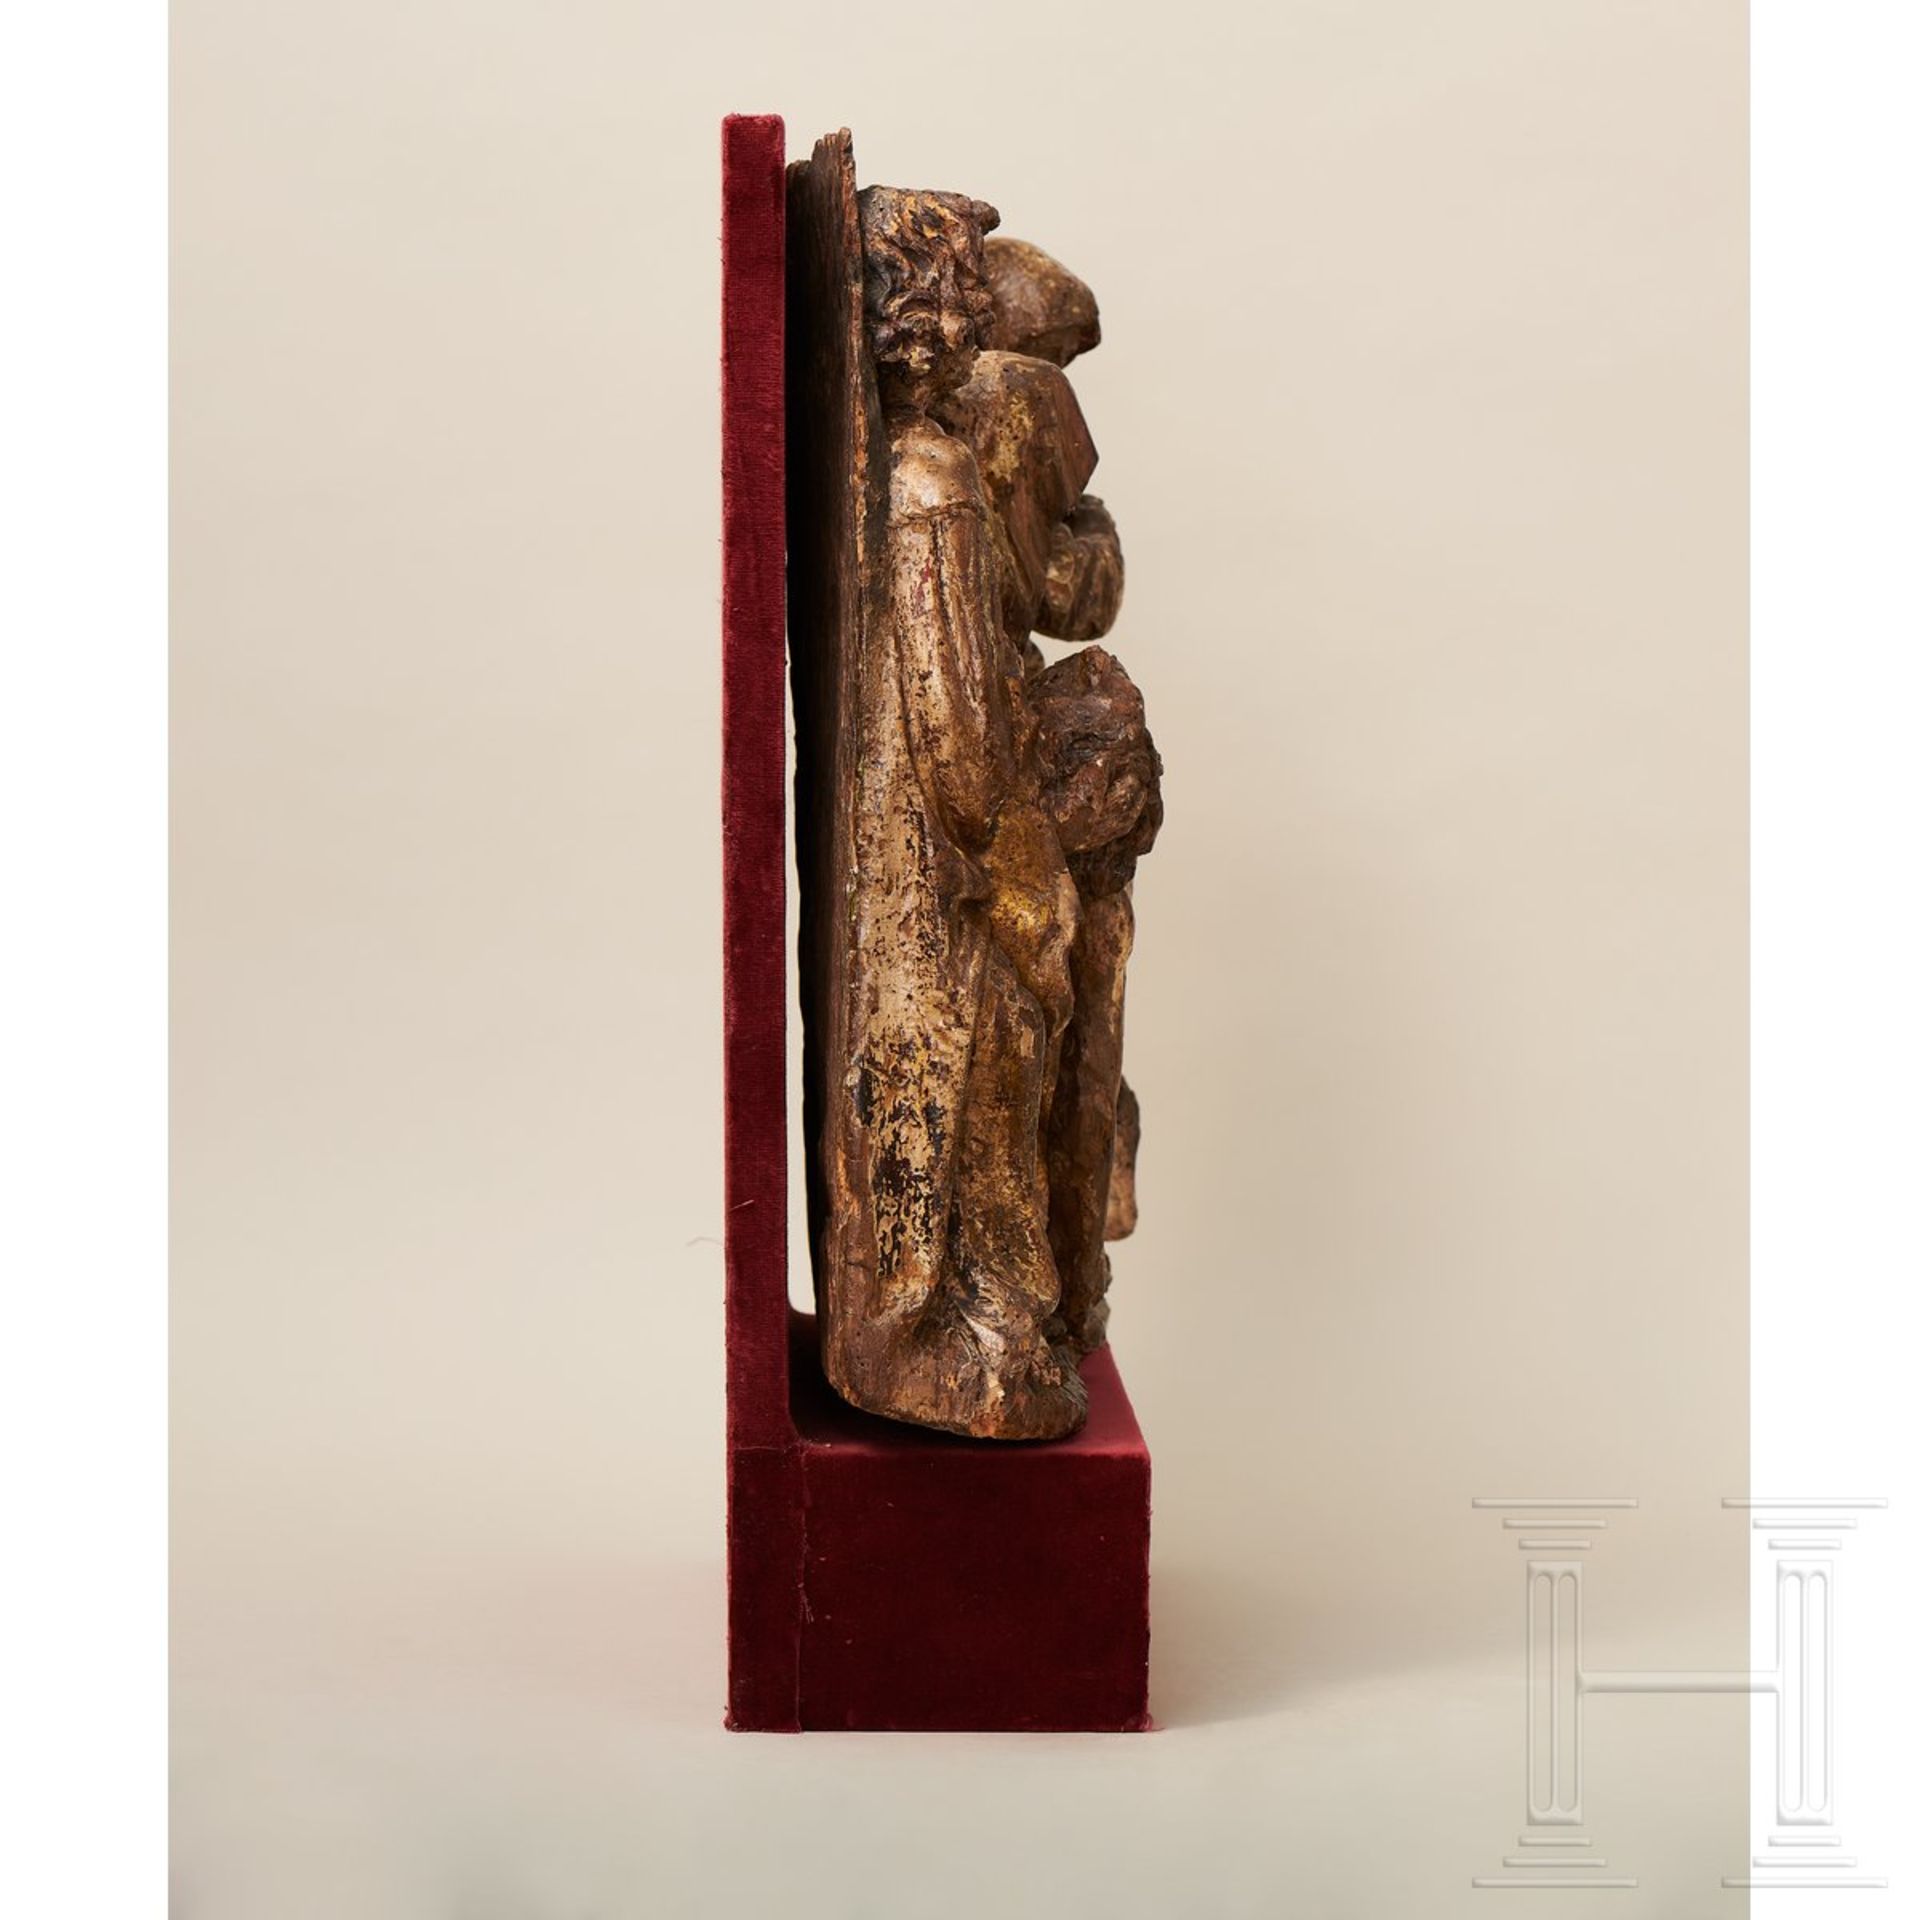 Relieftafel mit Darstellung der Beweinung Christi, flämisch, spätes 15. Jhdt. - Bild 2 aus 14